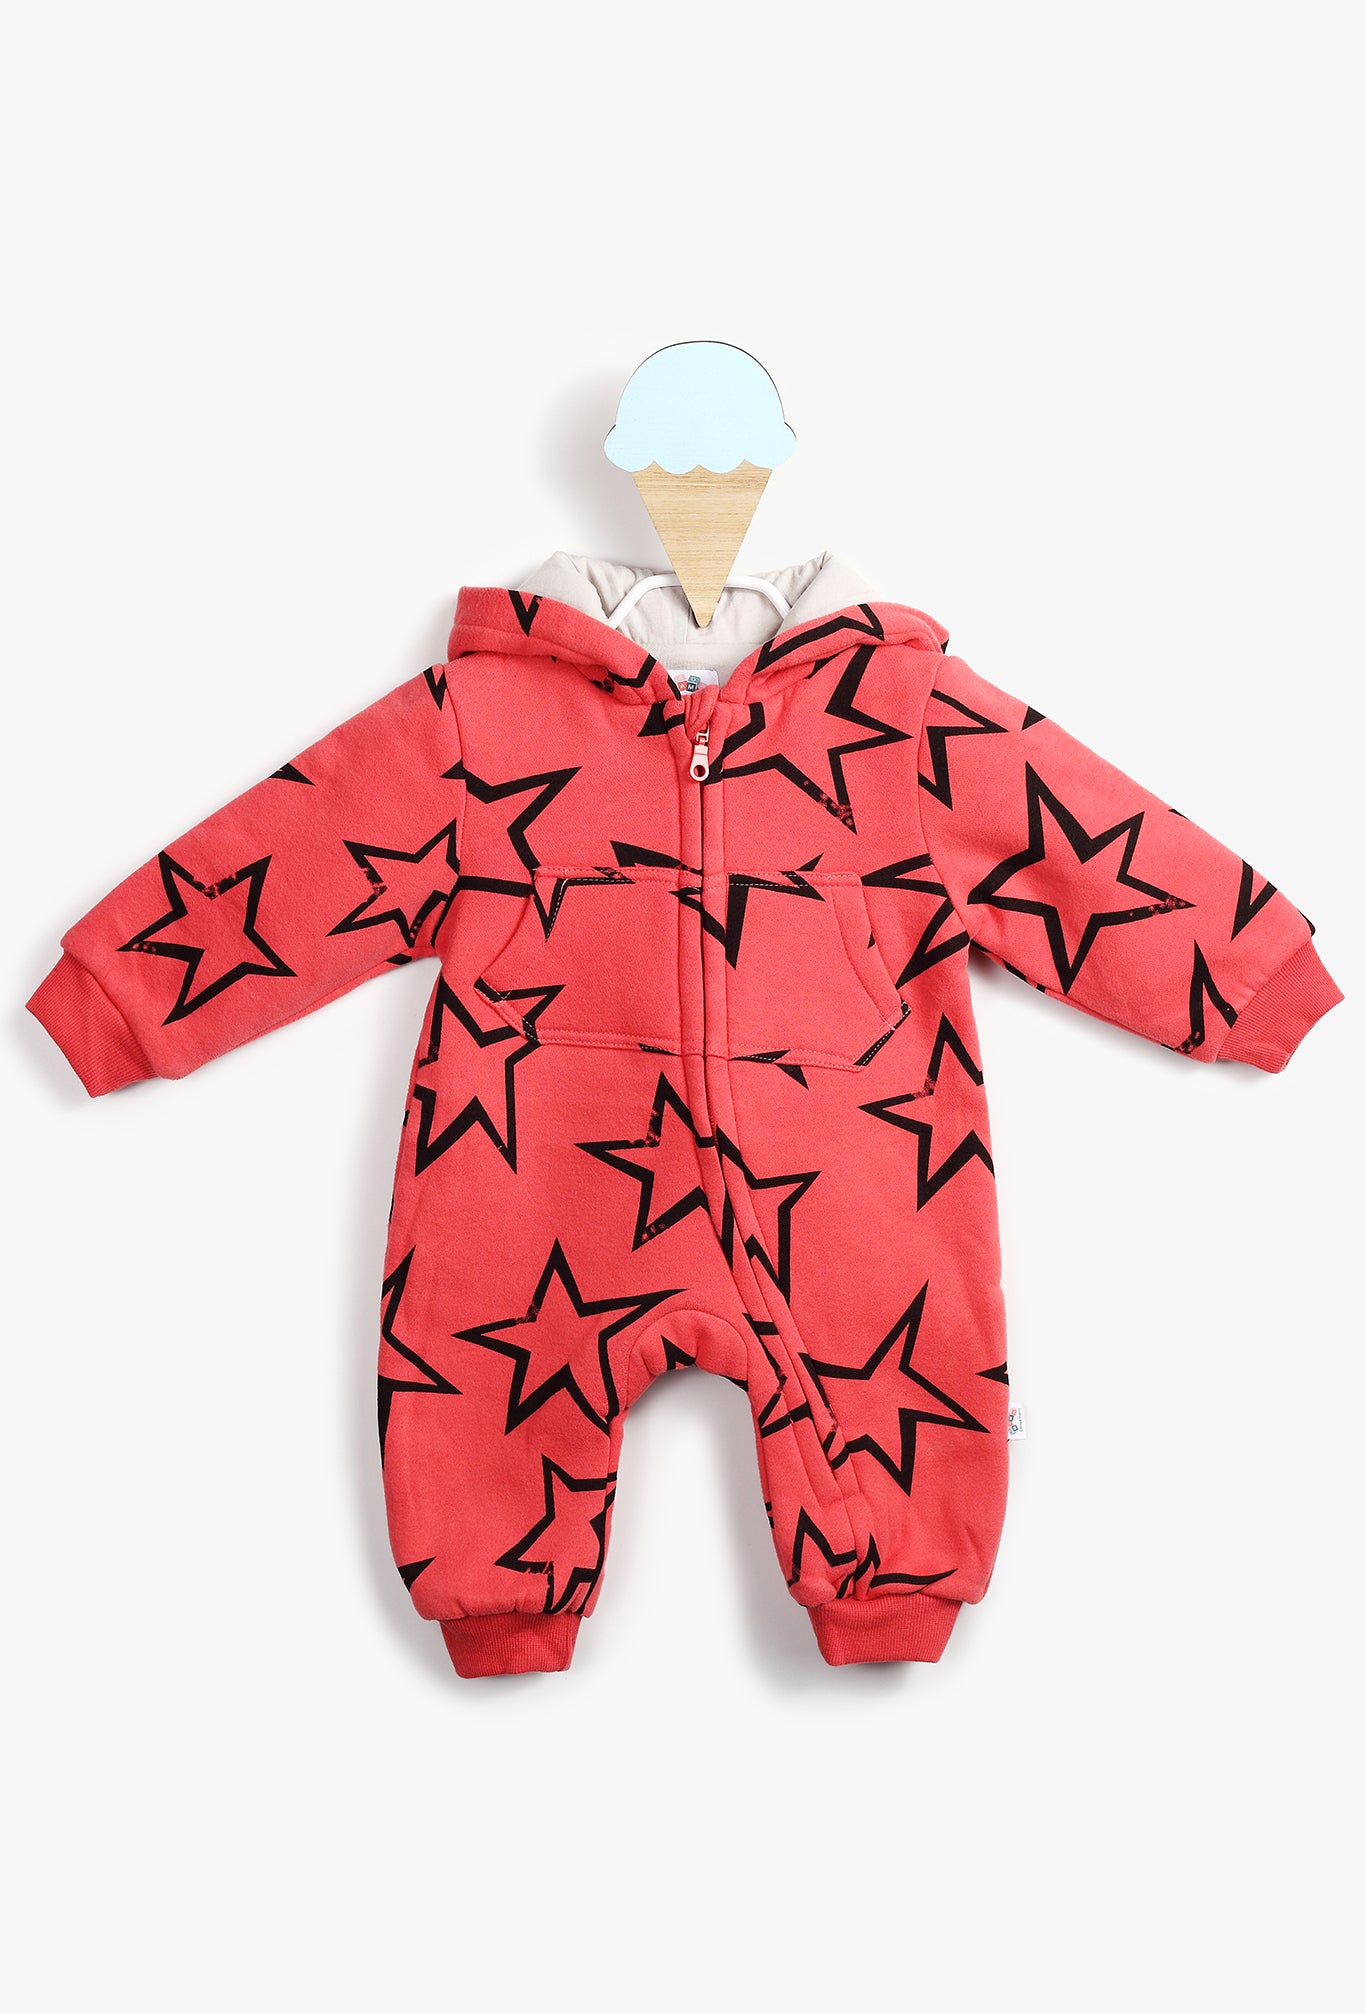 Stars Printed Red Hooded Baby Girl Onesie